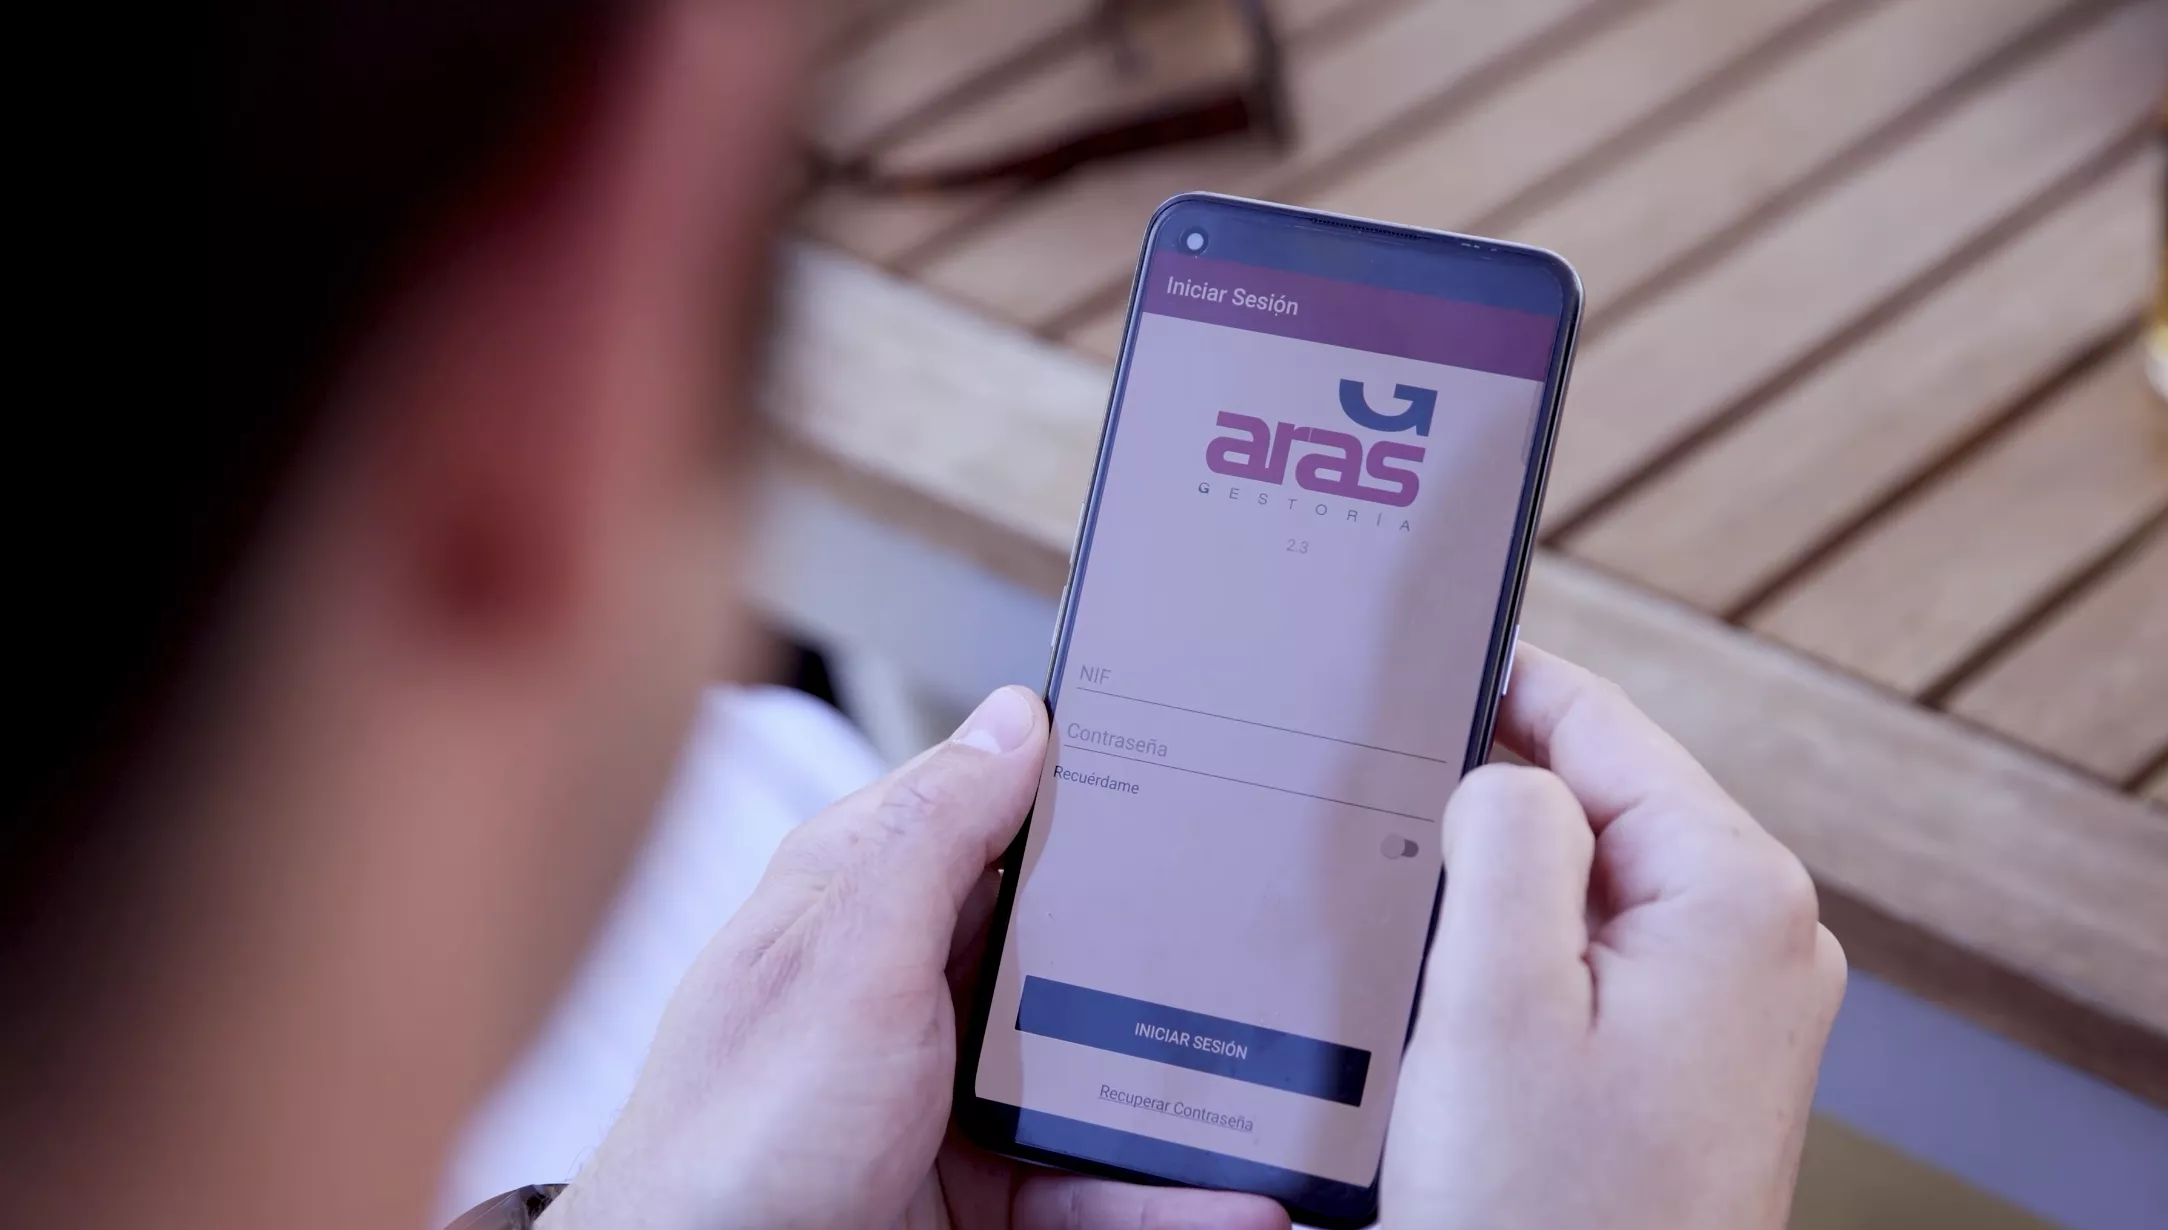 Gestoría Aras lanza una aplicación pionera destinada a transformar la forma en que sus clientes gestionan sus datos empresariales